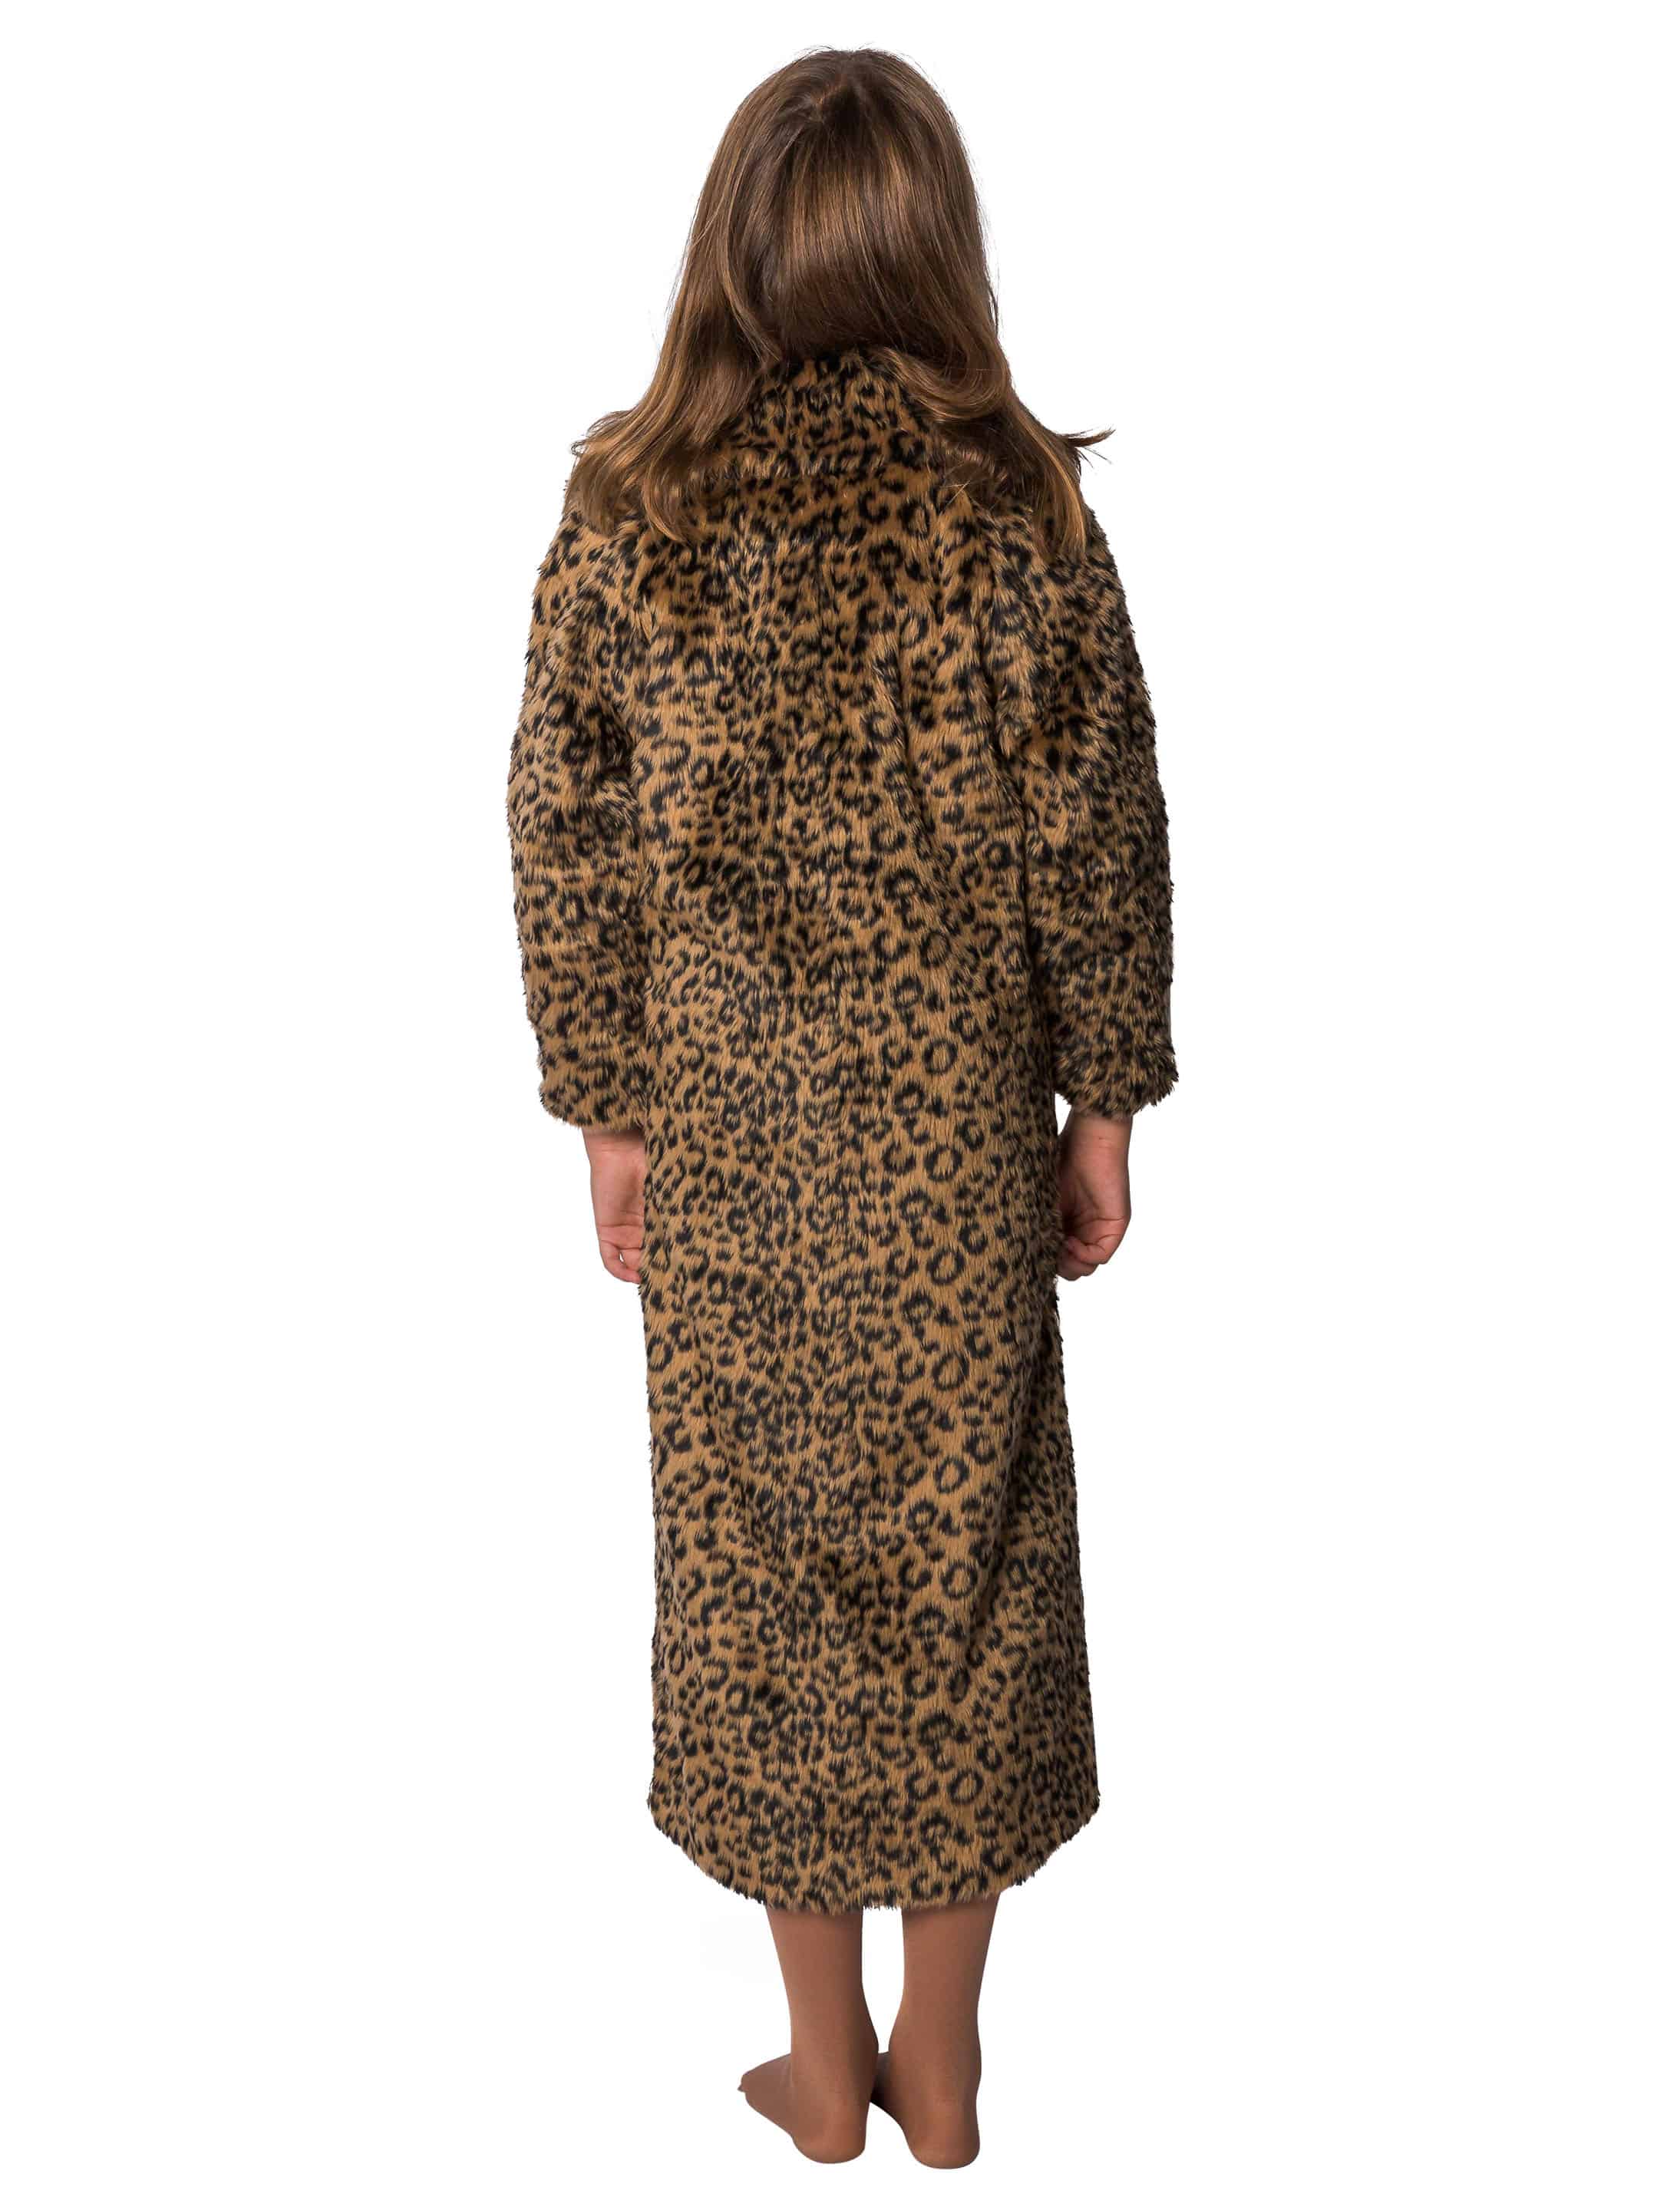 Mantel Kinder Leopardenmuster schwarz/braun 116-128